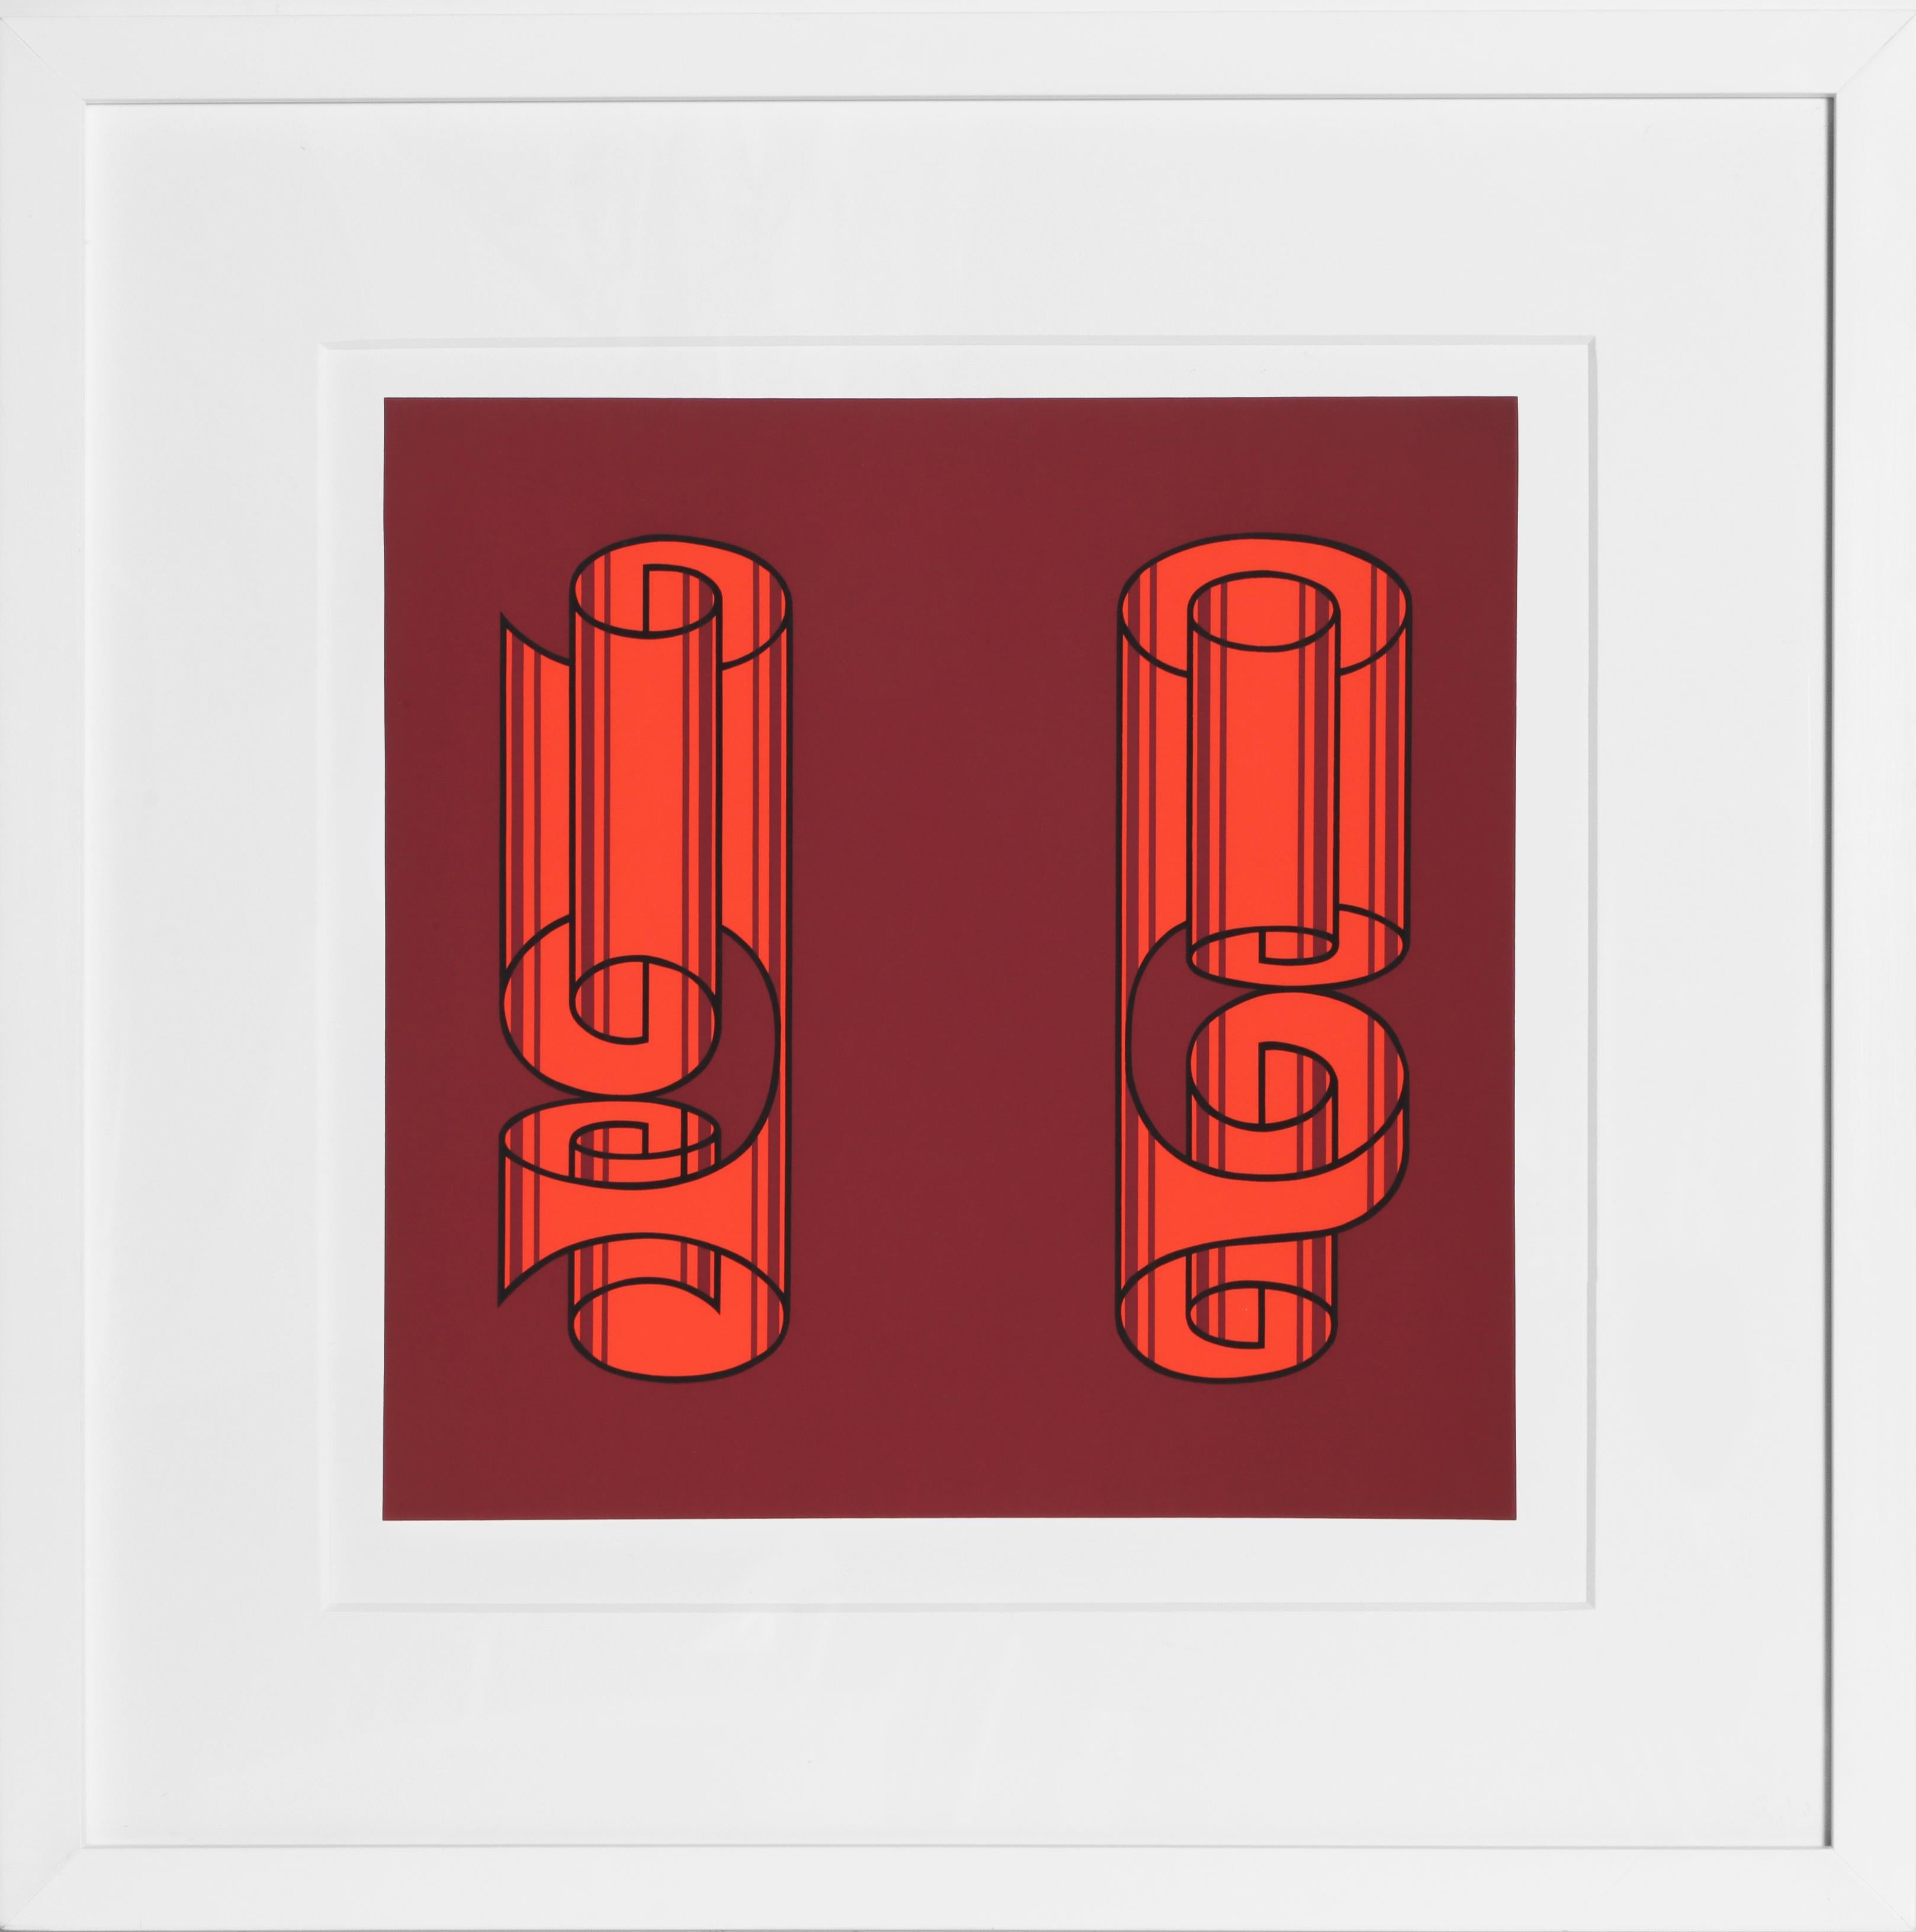 Abstract Print Josef Albers - P1, F18, I2 enroulé 